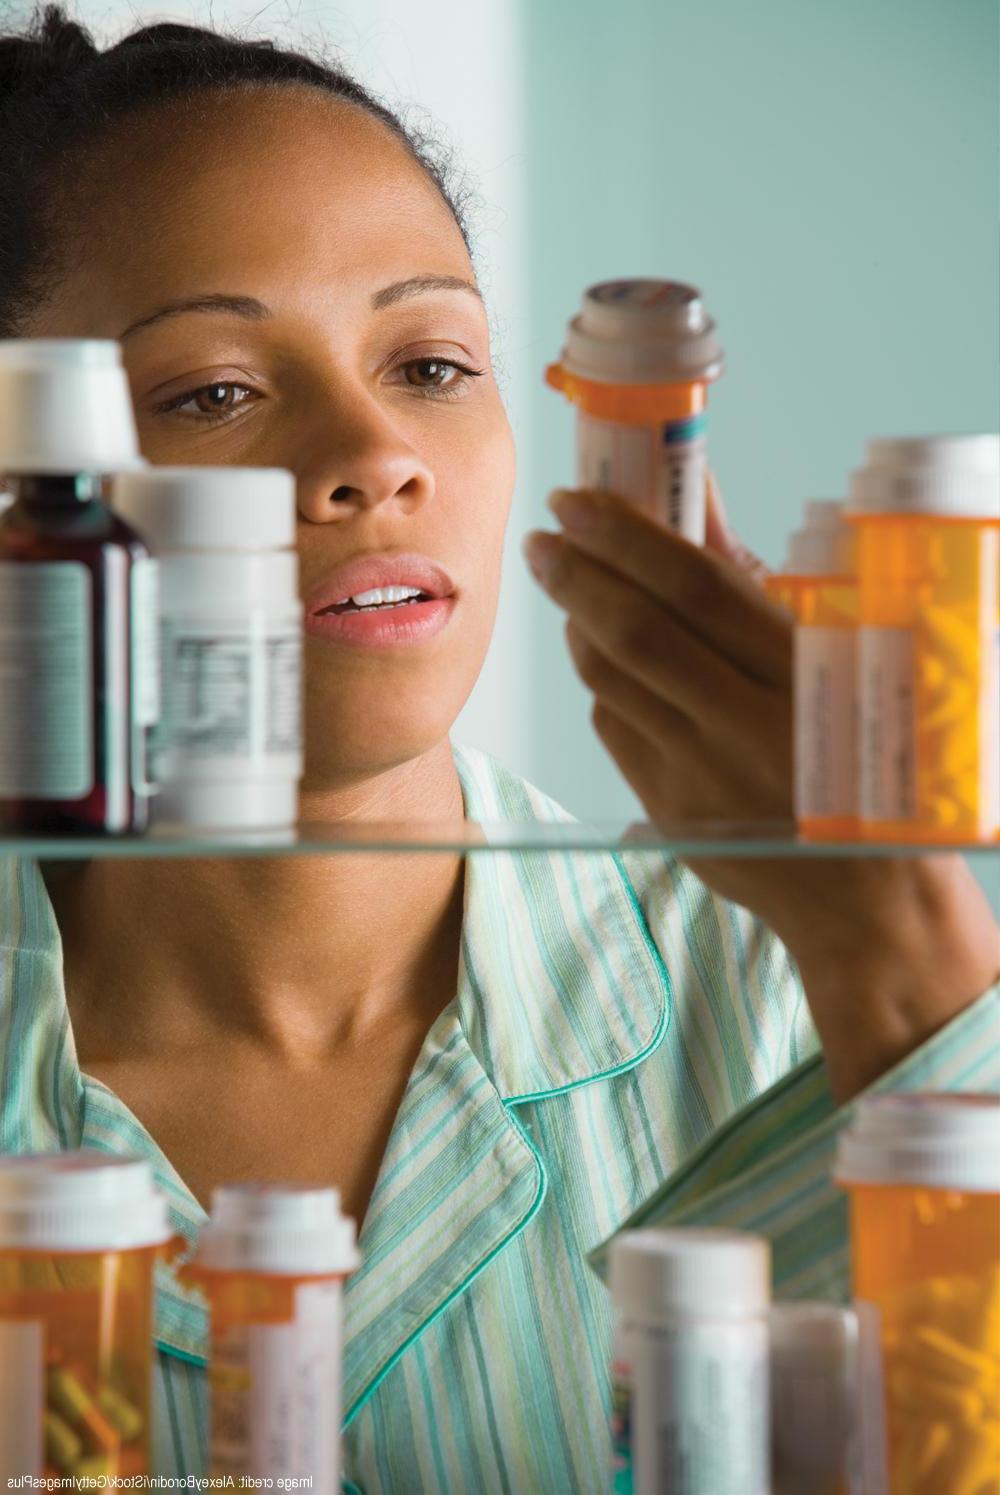 一名妇女在橱柜里检查药品的照片